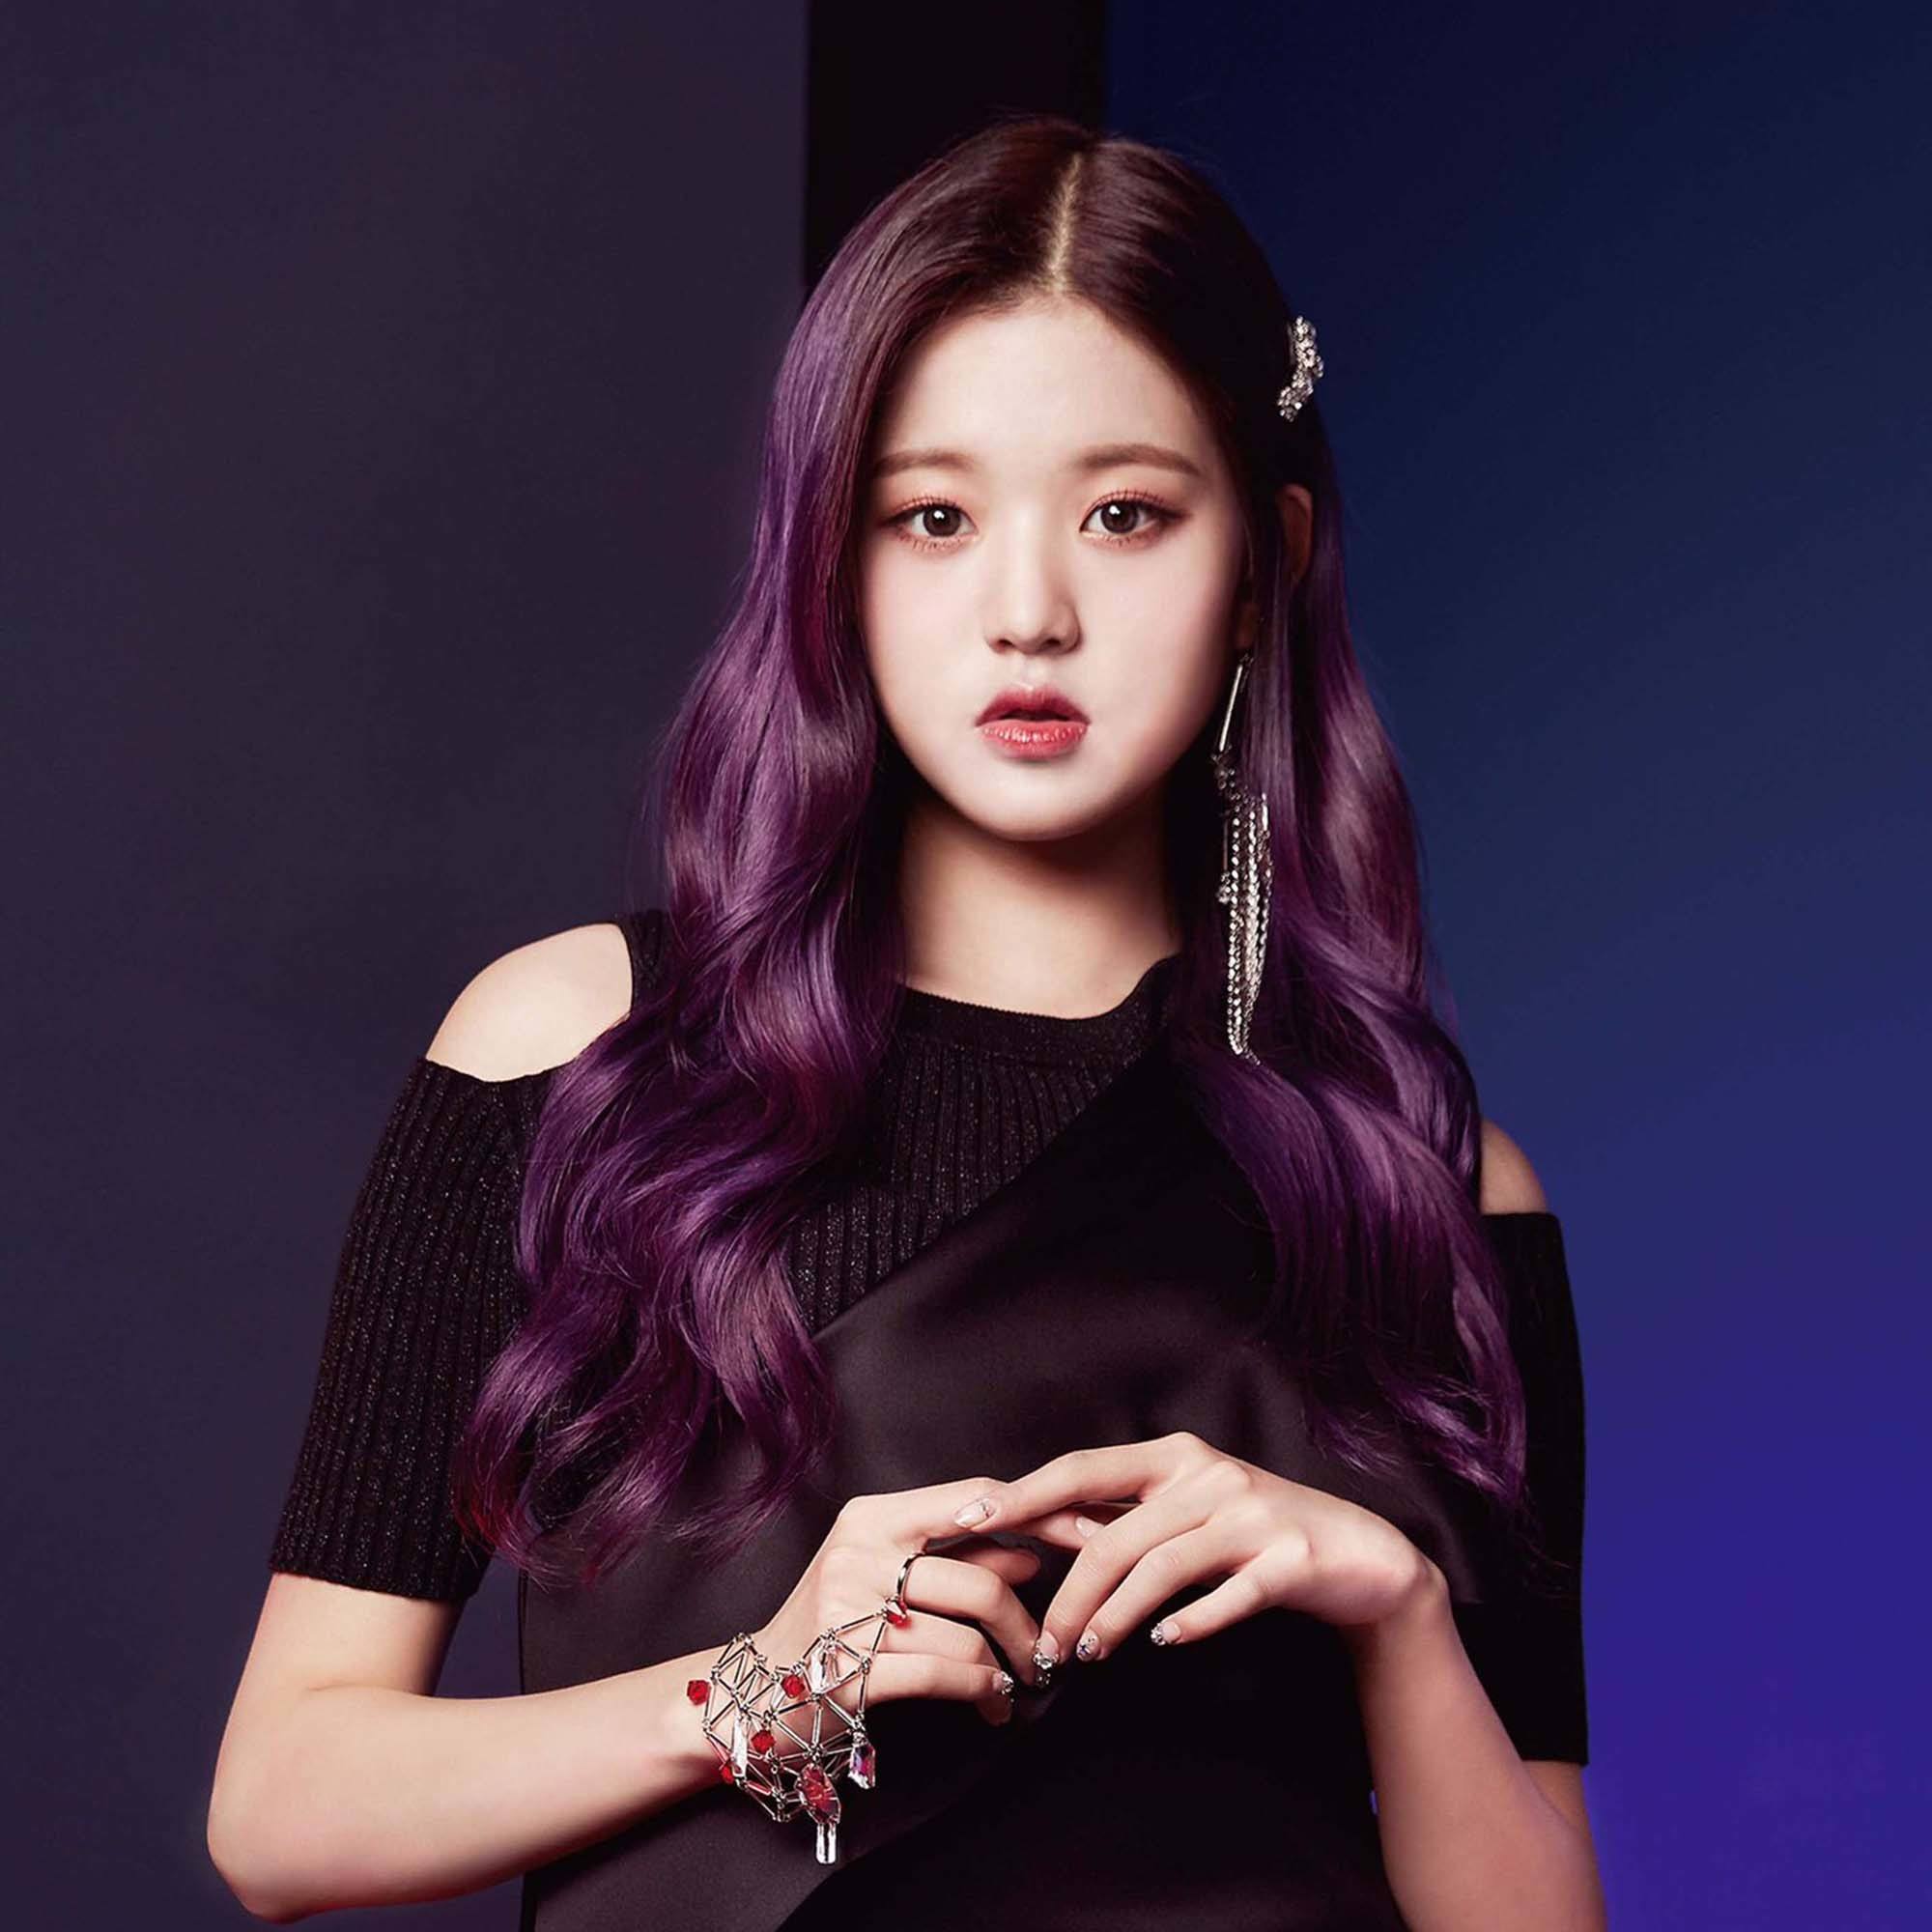 jang wonyoung dengan rambut panjang berwarna ungu gelap